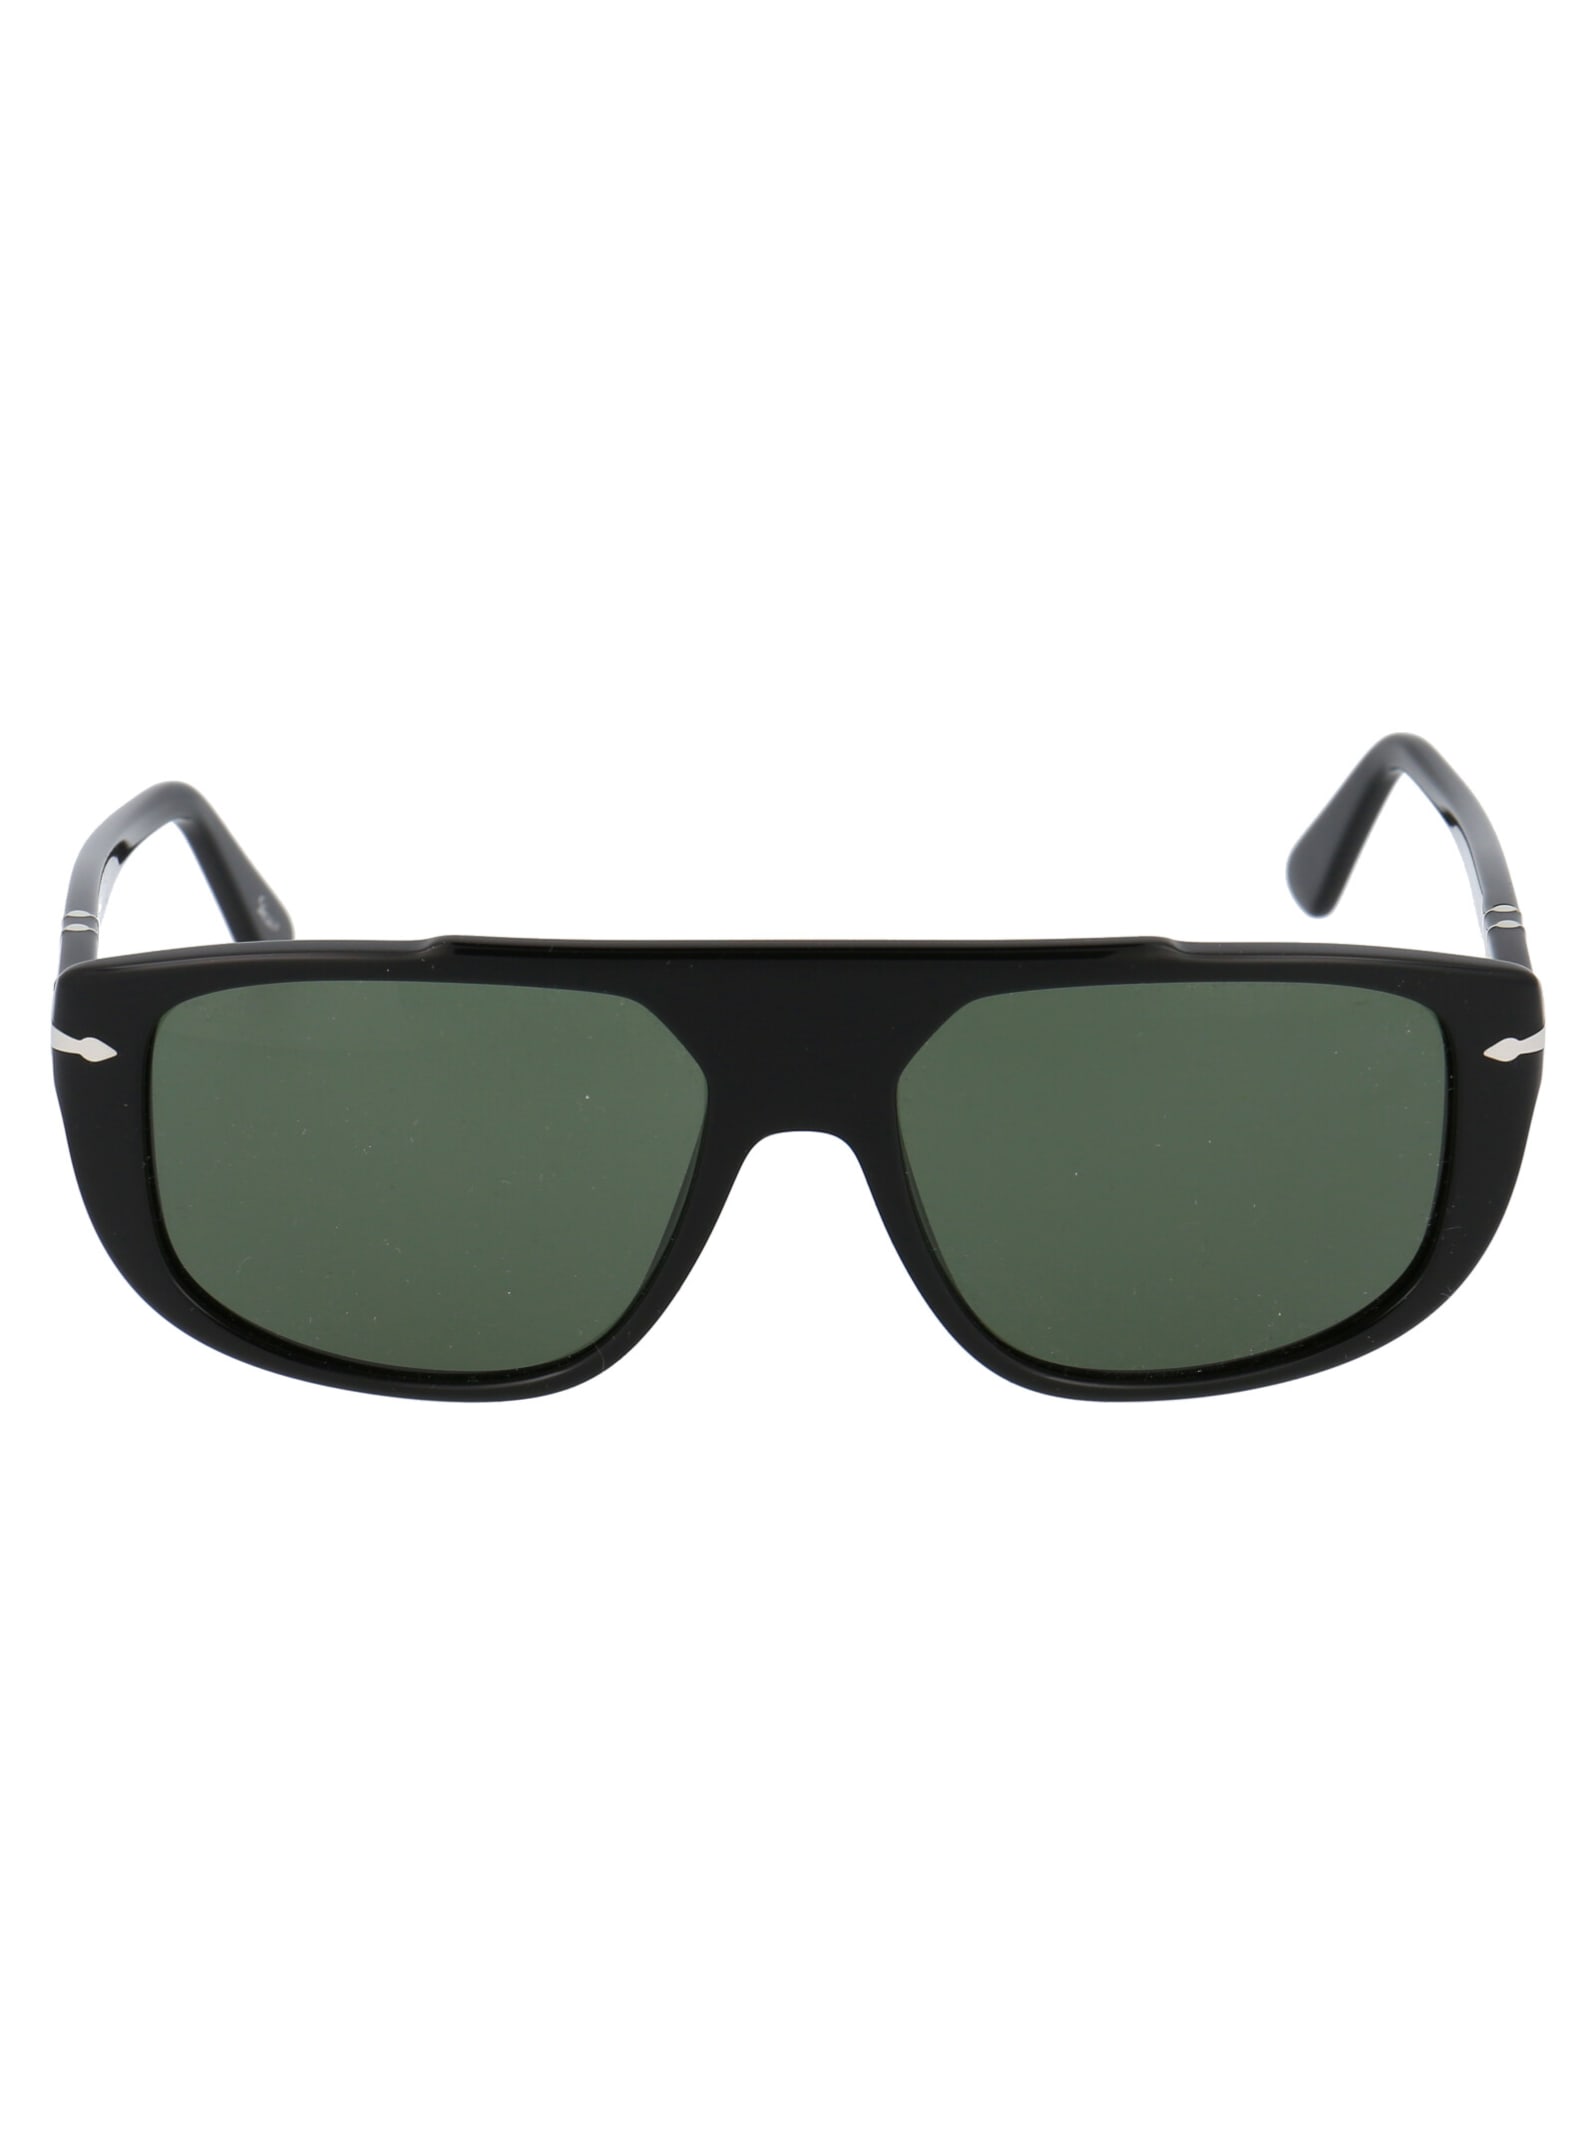 Persol 0po3261s Sunglasses